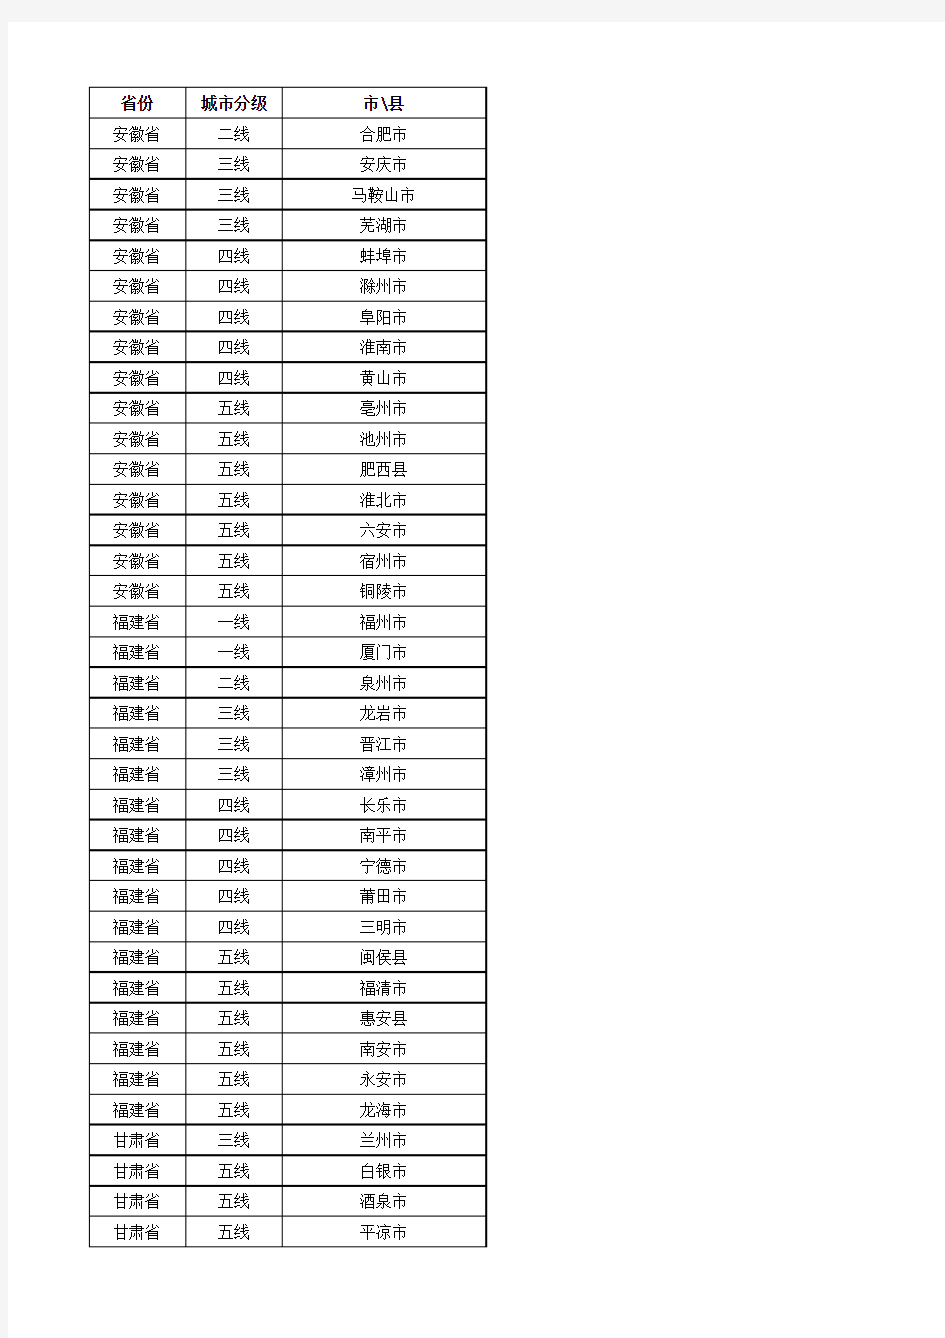 2013年中国城市分级完整名单——来自第一财经周刊